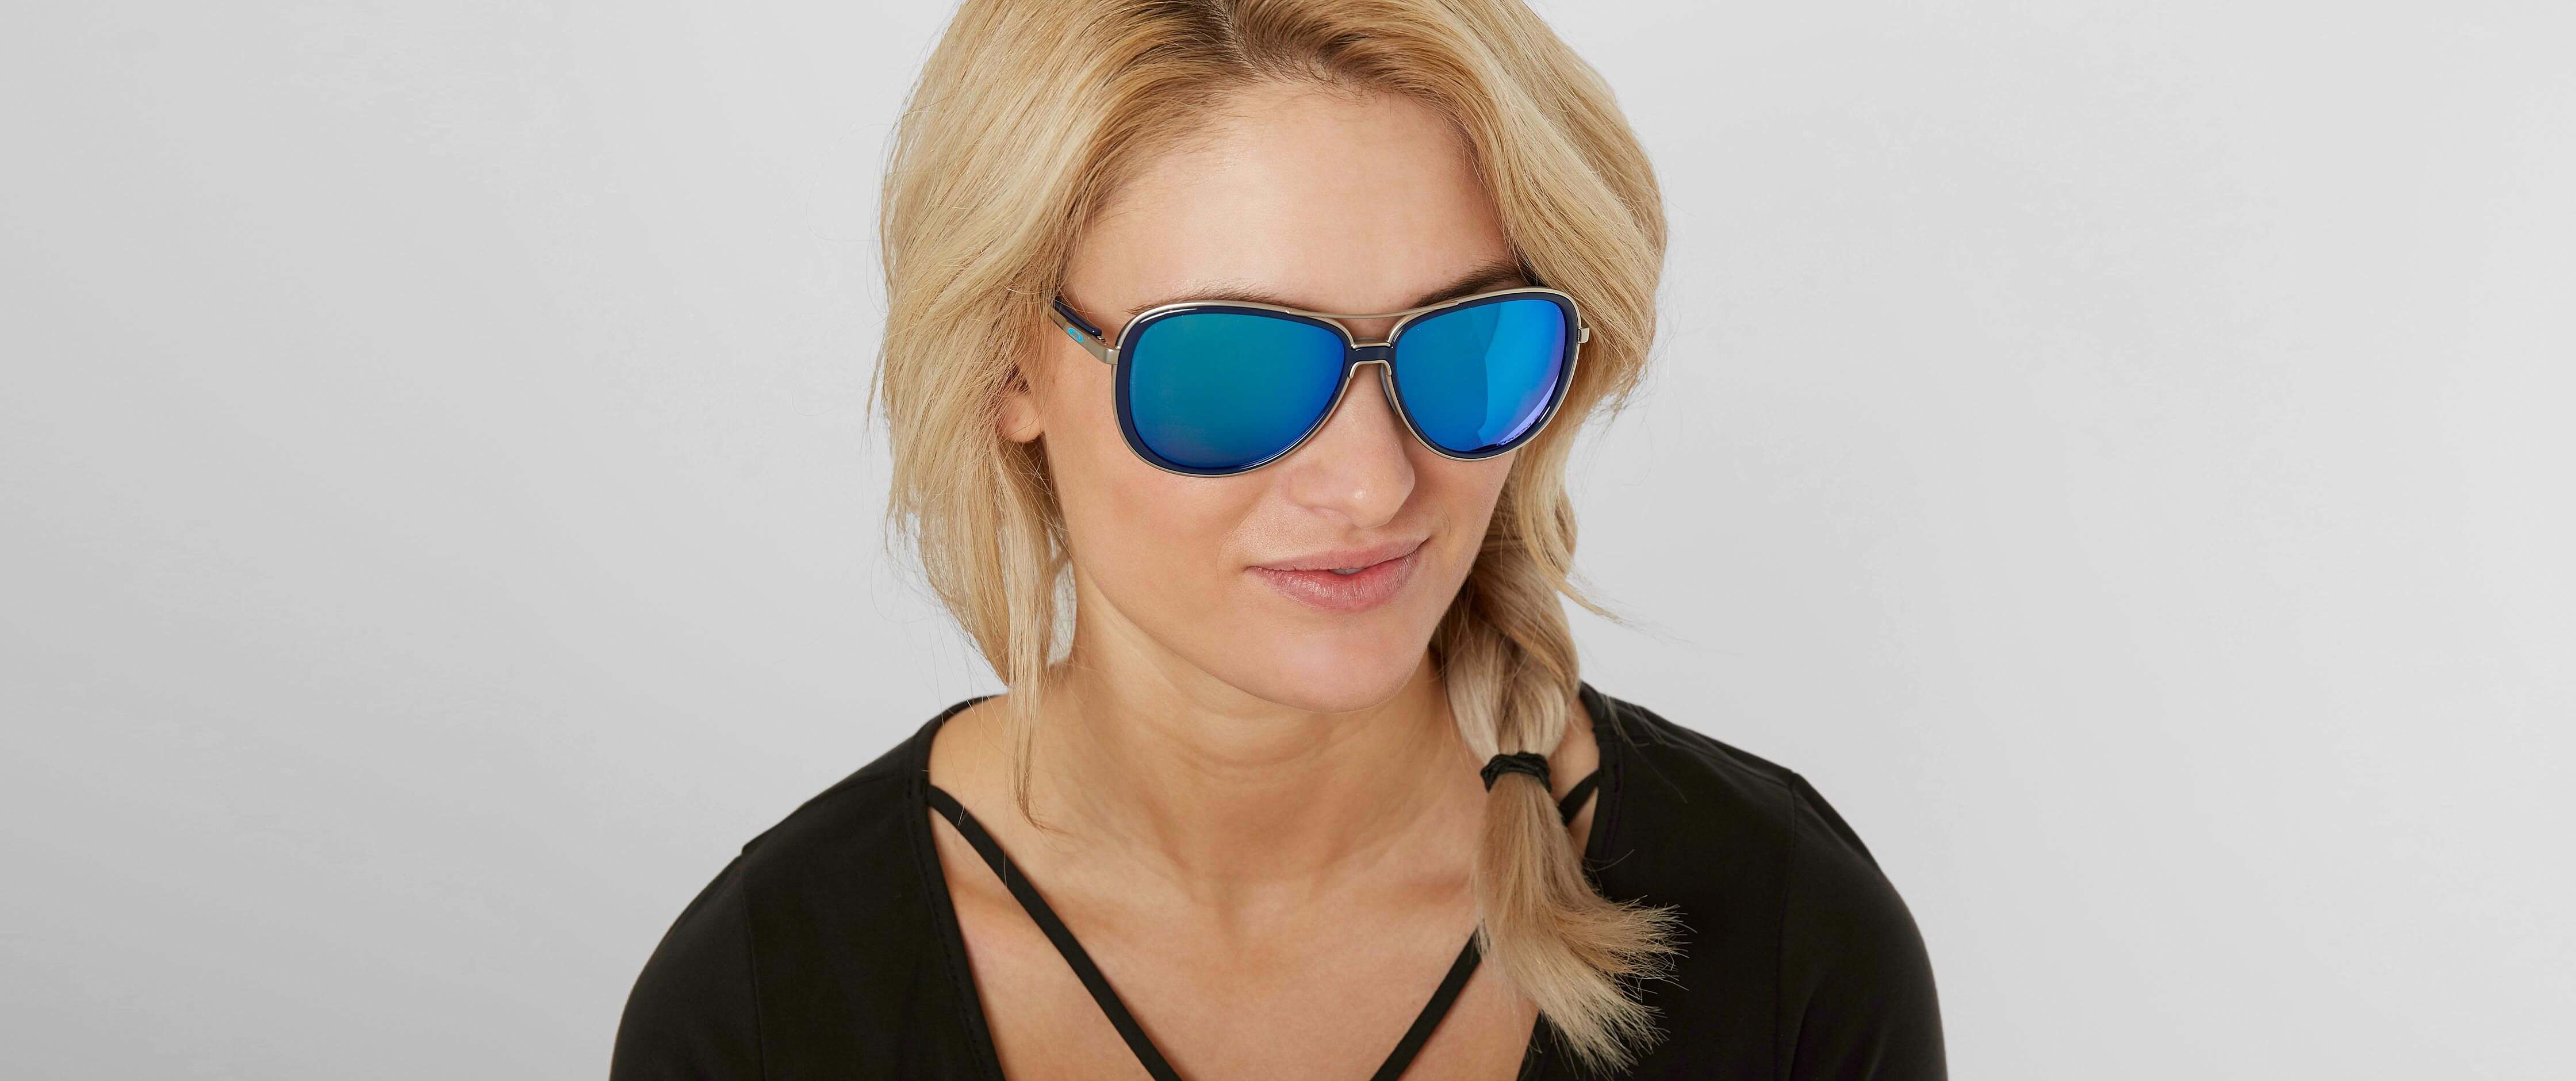 oakley women's split time sunglasses